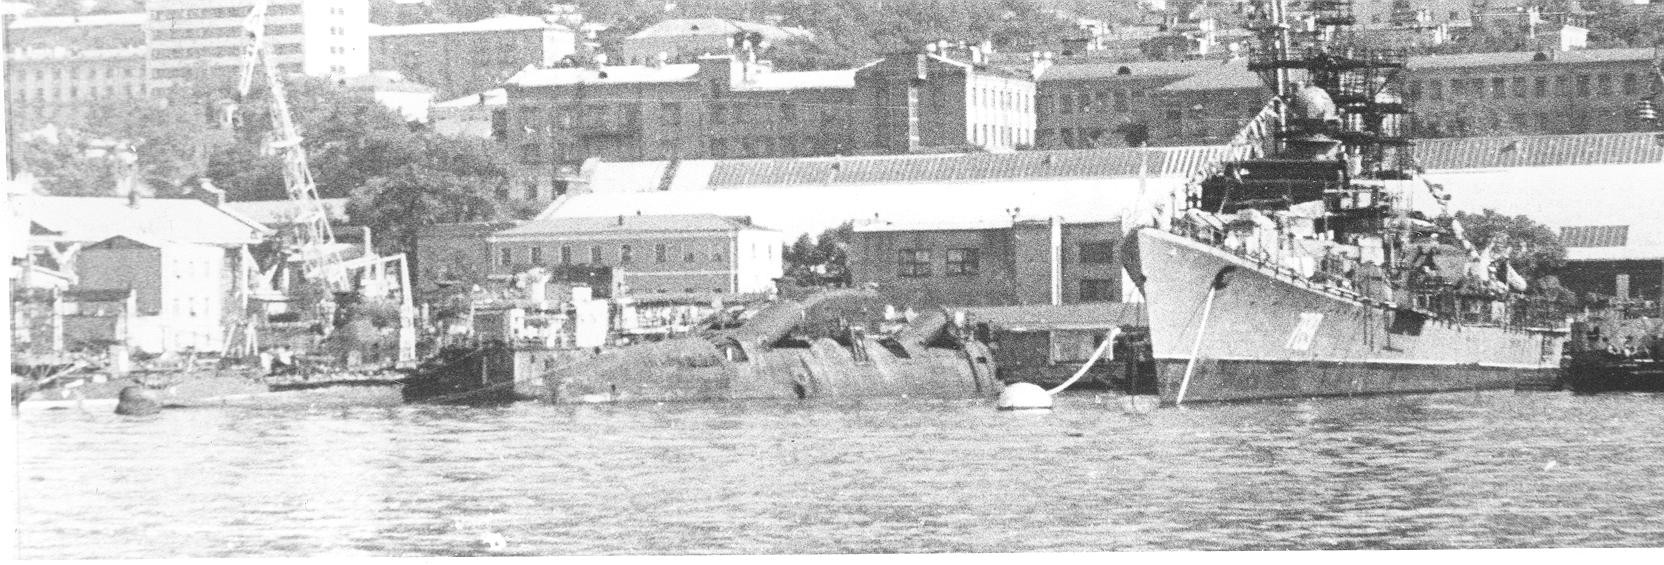 Владивосток конец 70-х гг.JPG